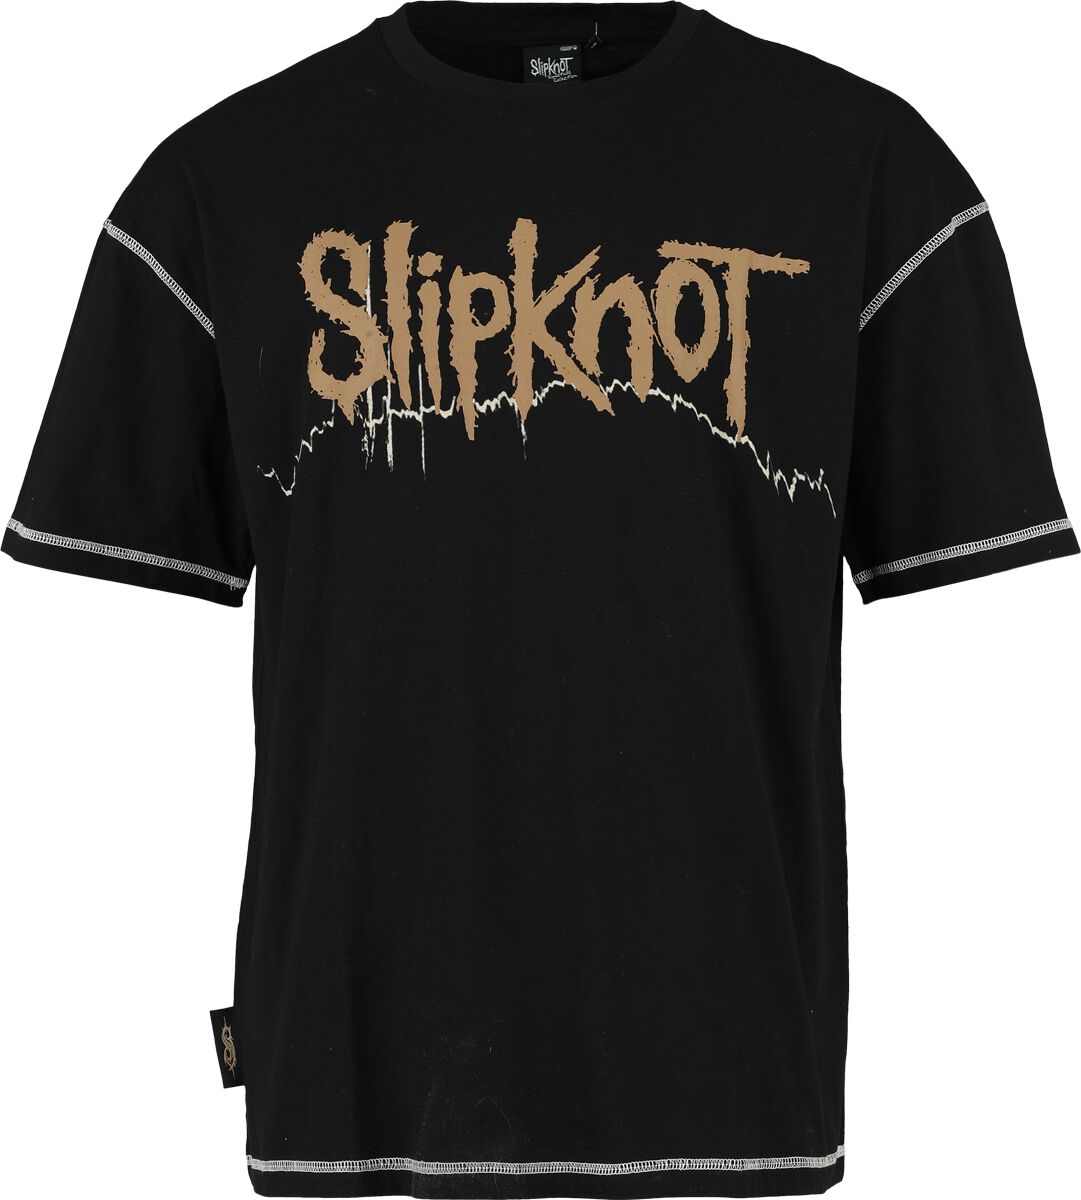 Slipknot T-Shirt - EMP Signature Collection - S bis 3XL - für Männer - Größe M - schwarz  - EMP exklusives Merchandise!